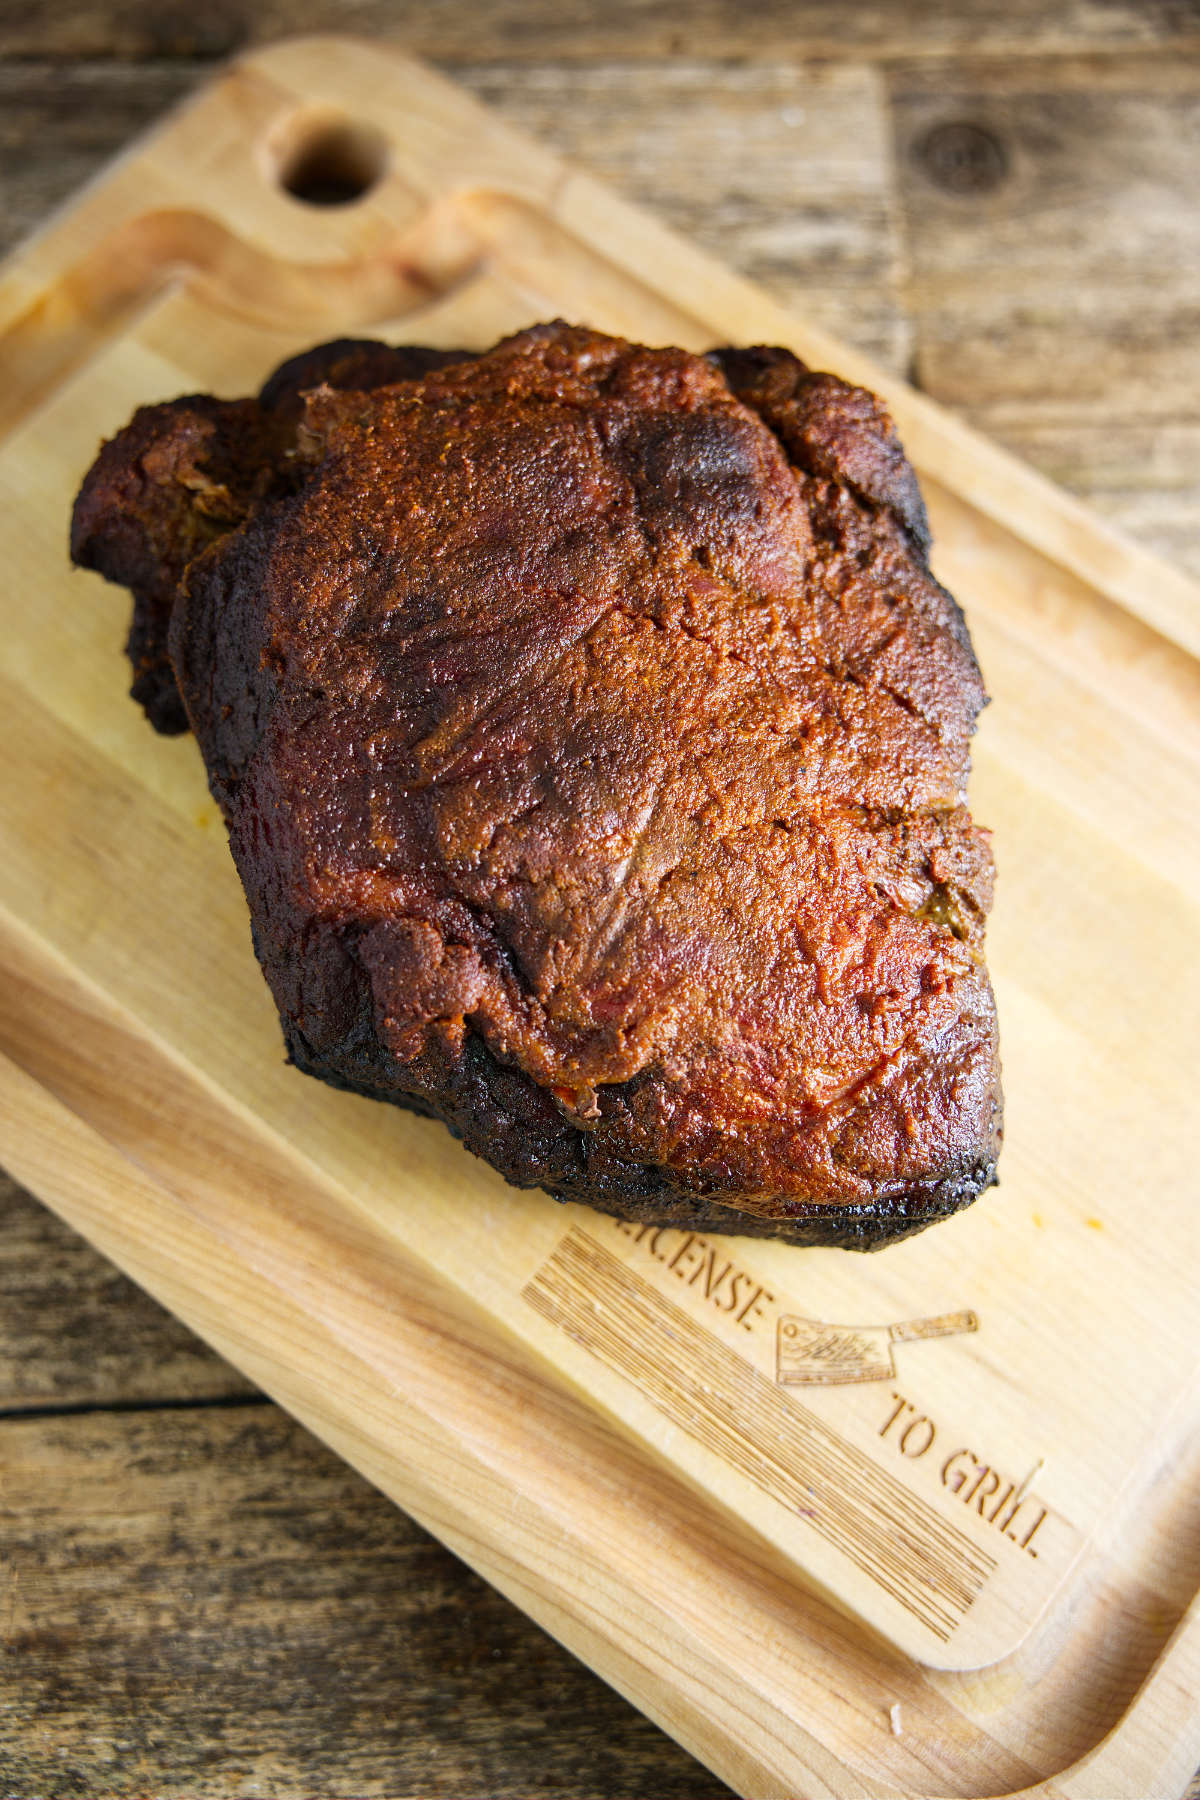 Smoked pork shoulder on butcher block.